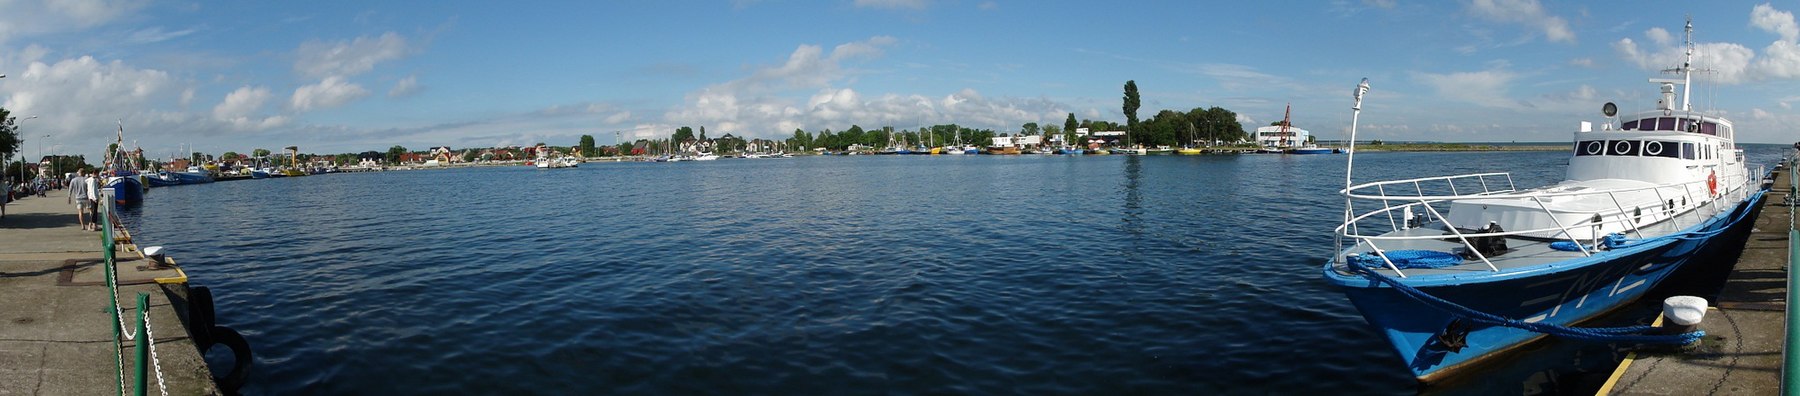 Jastarnia, Harbour - panoramio.jpg